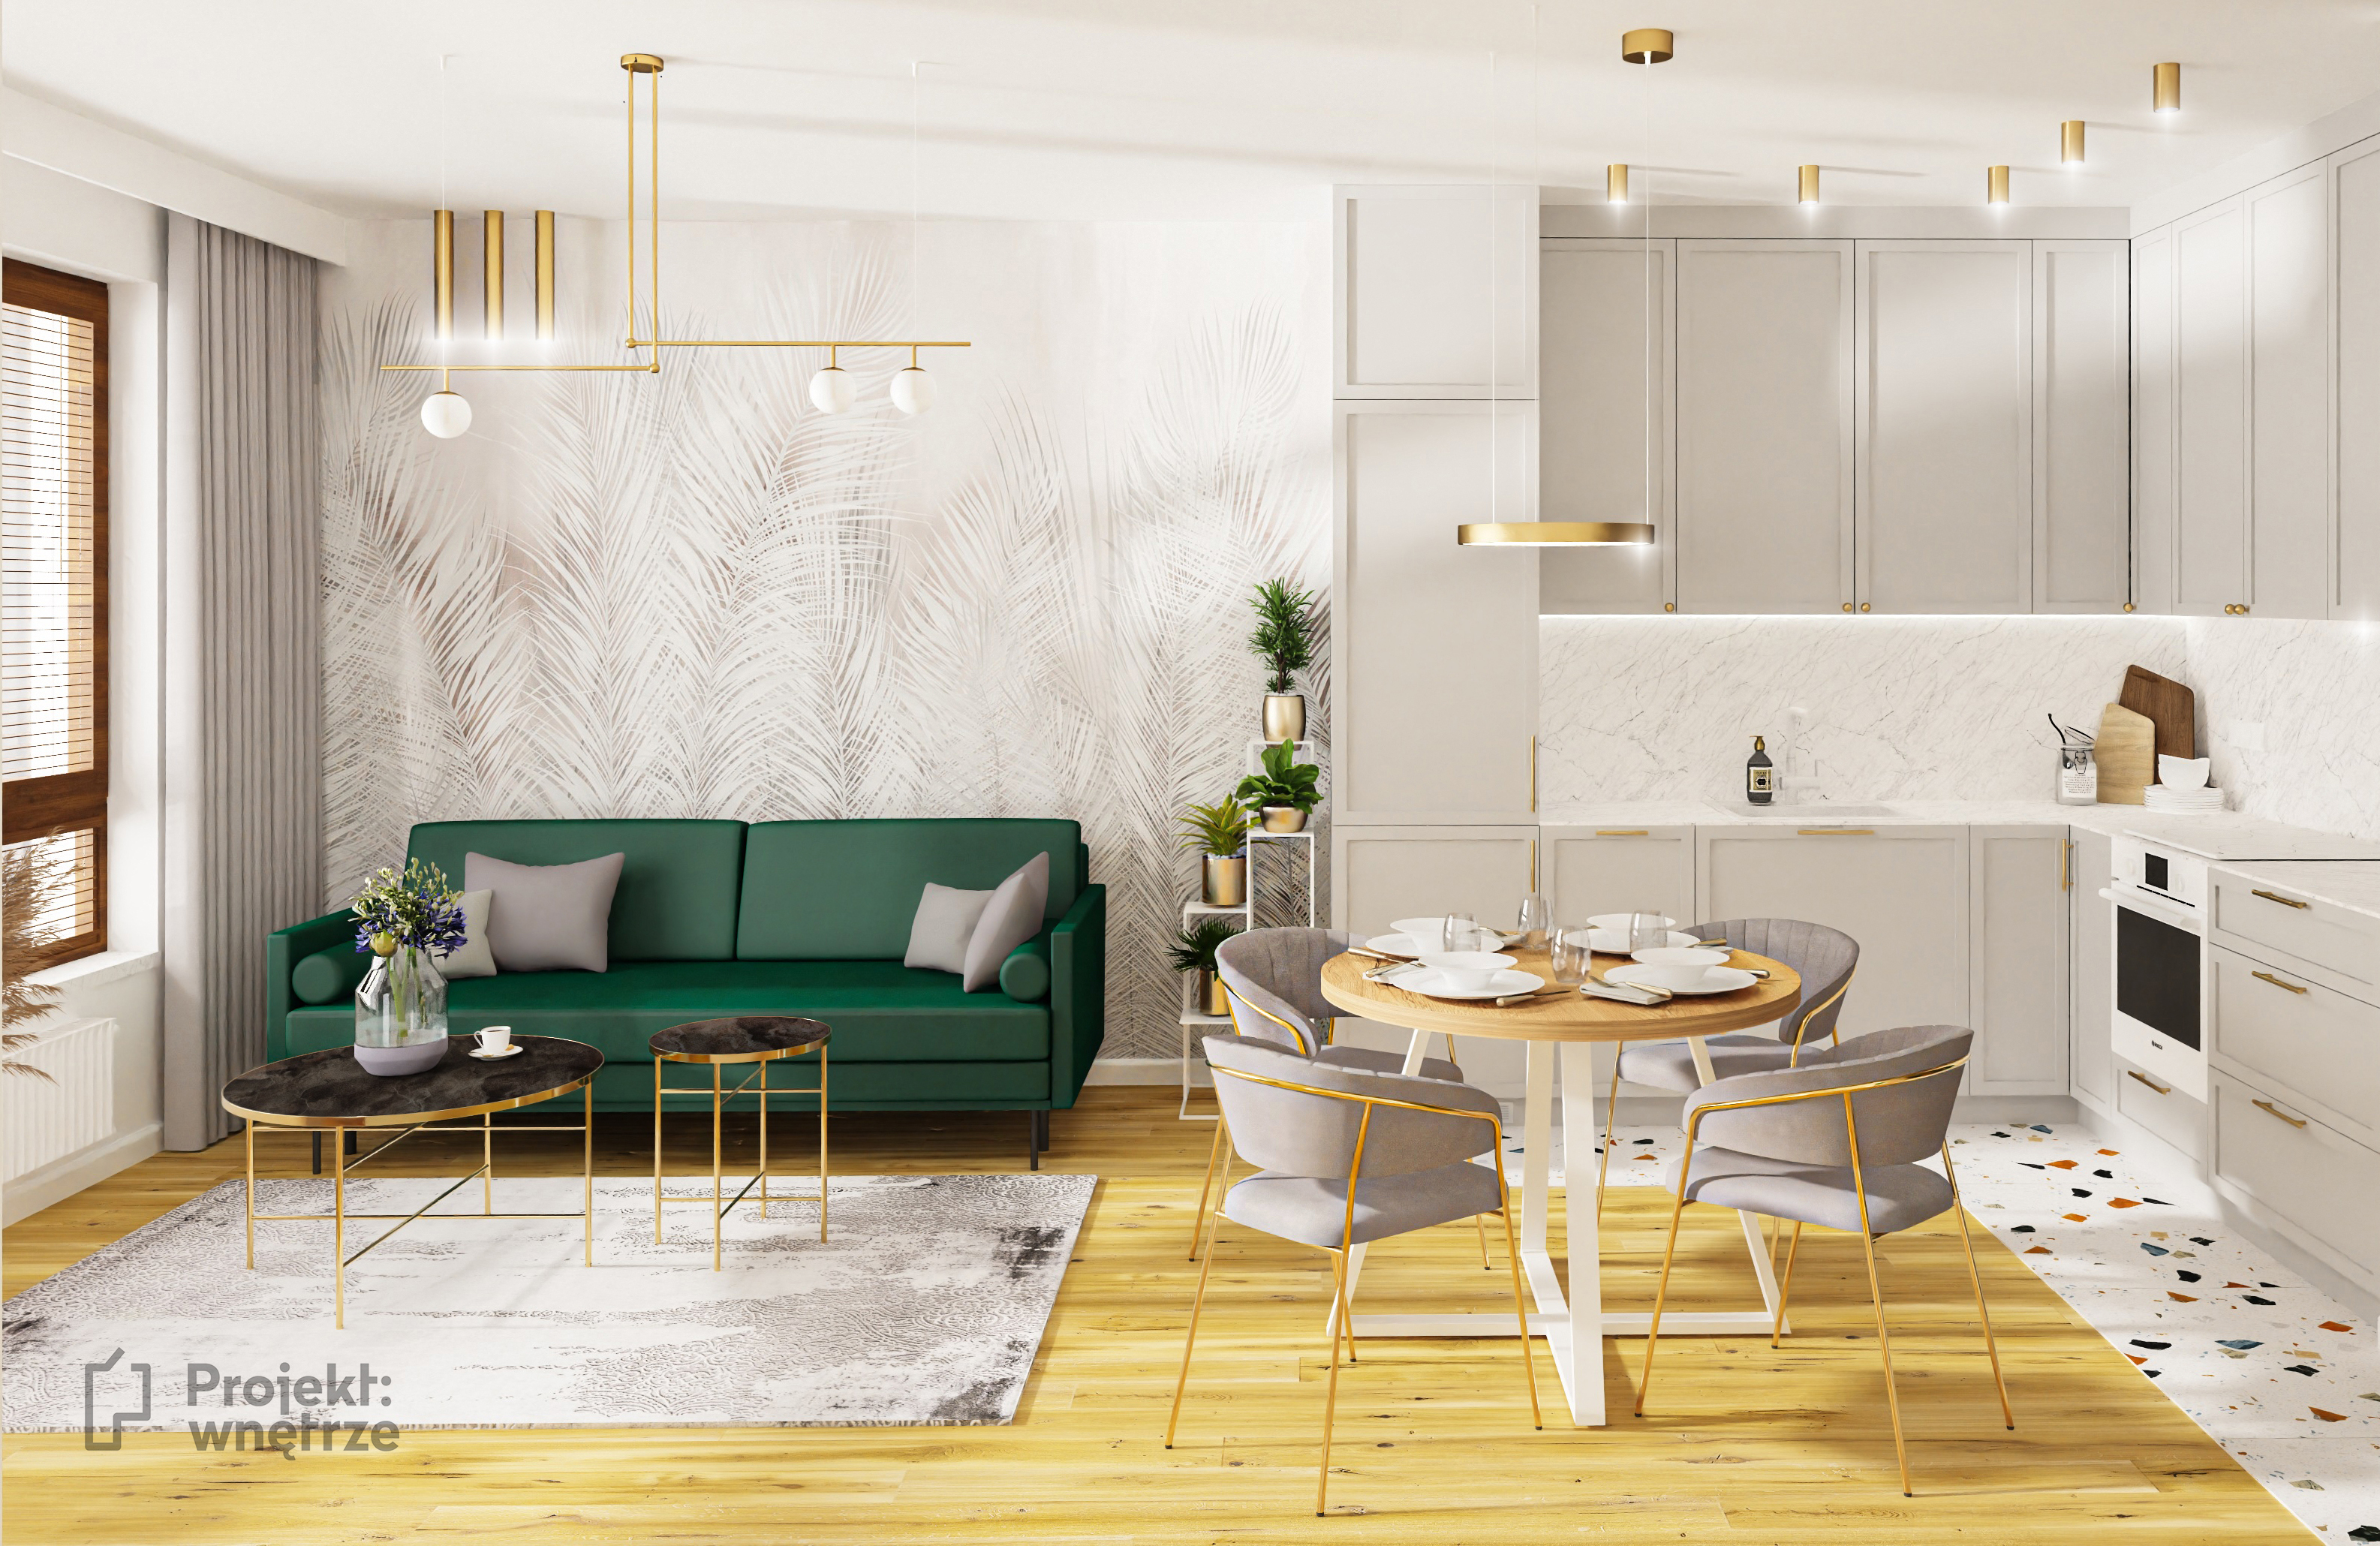 Projekt Wnętrze eleganckie mieszkanie złoto szarość zieleń sztukateria